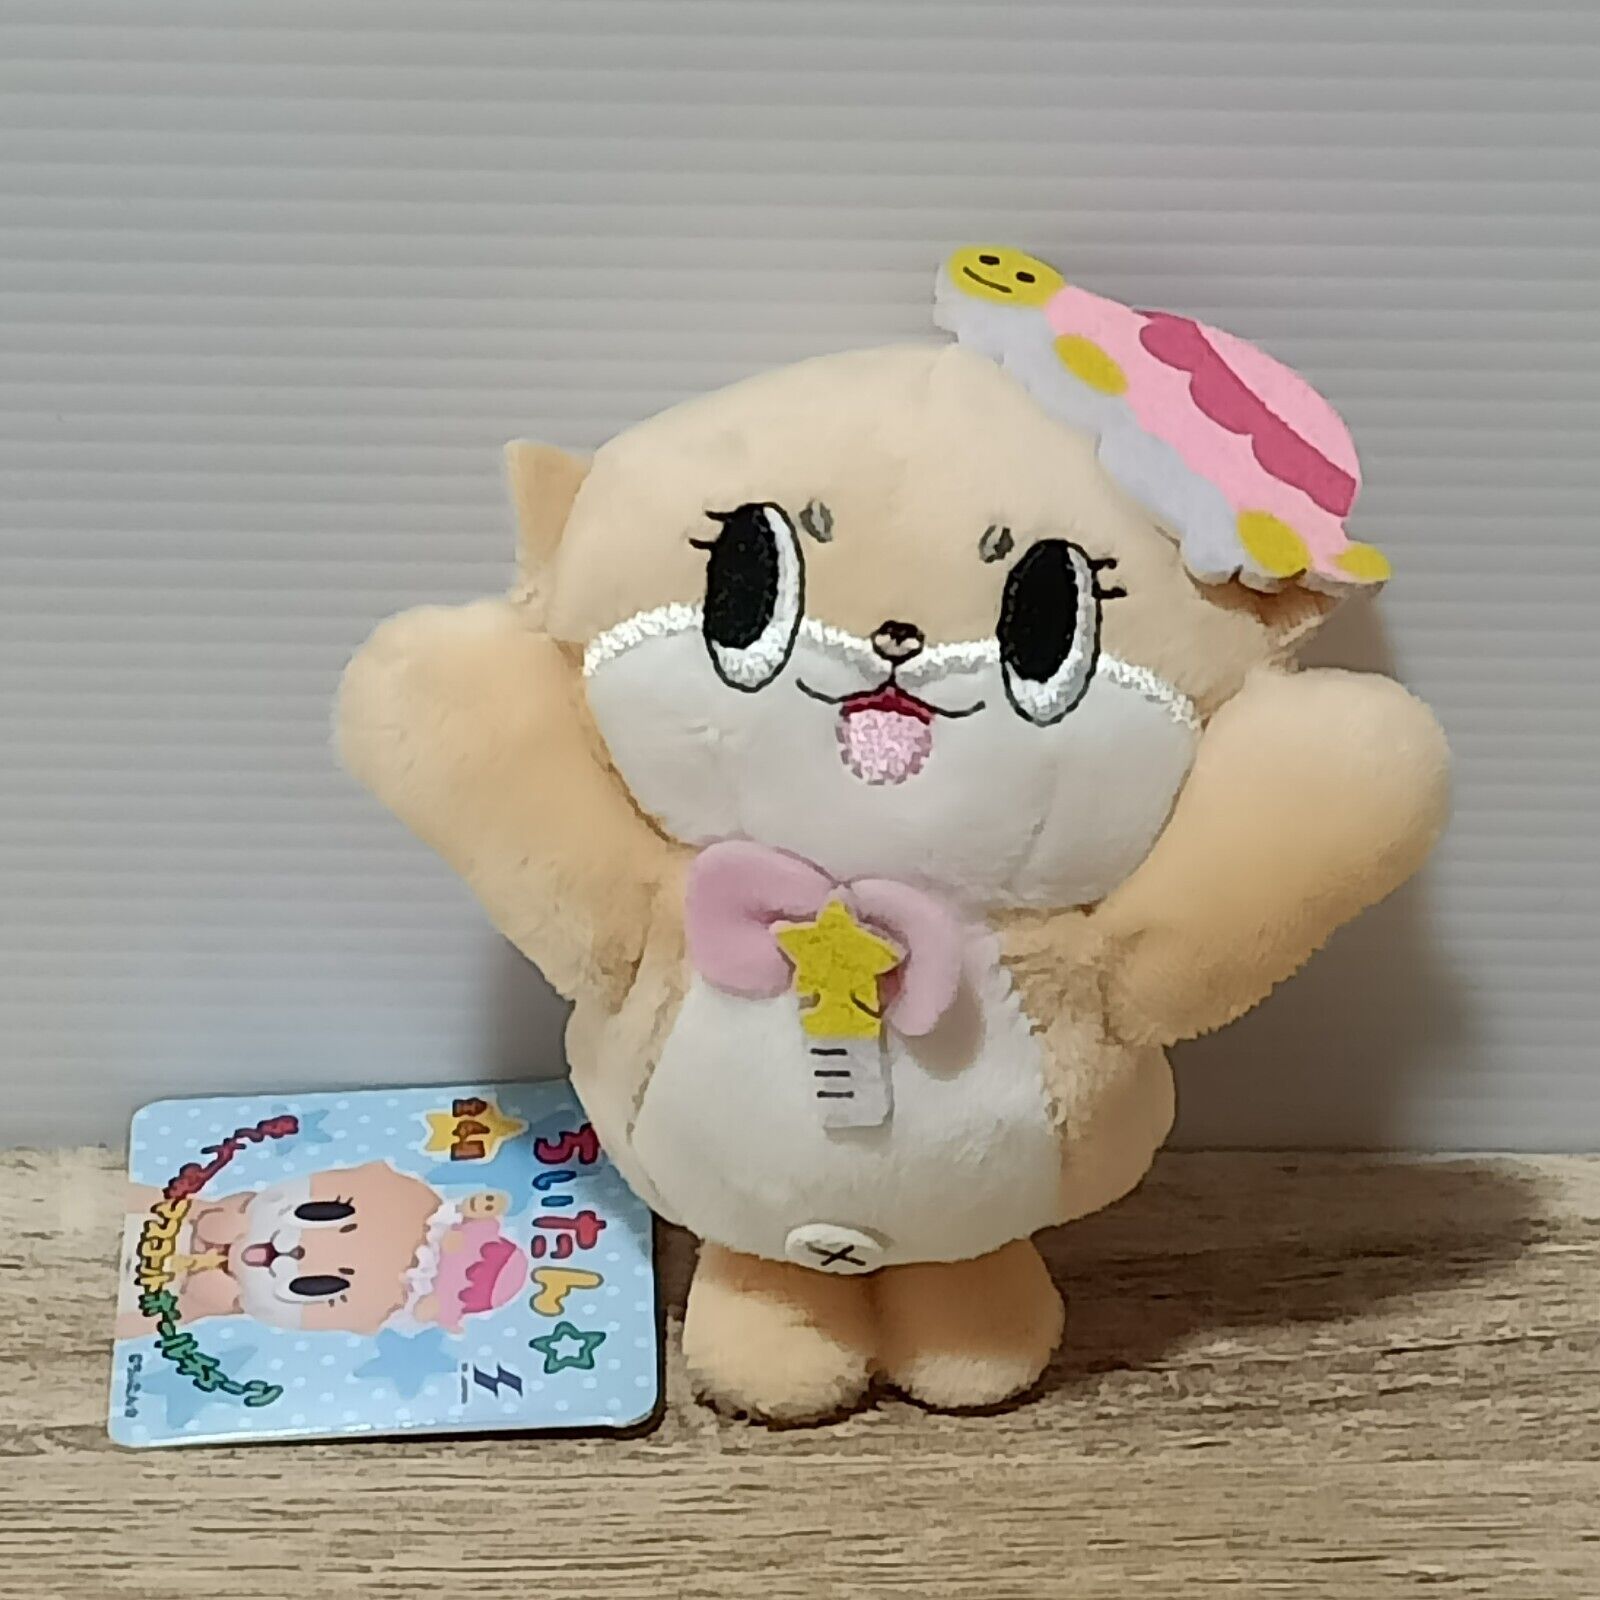 Chiitan Mascot Mochi Soft Plush Toy 4